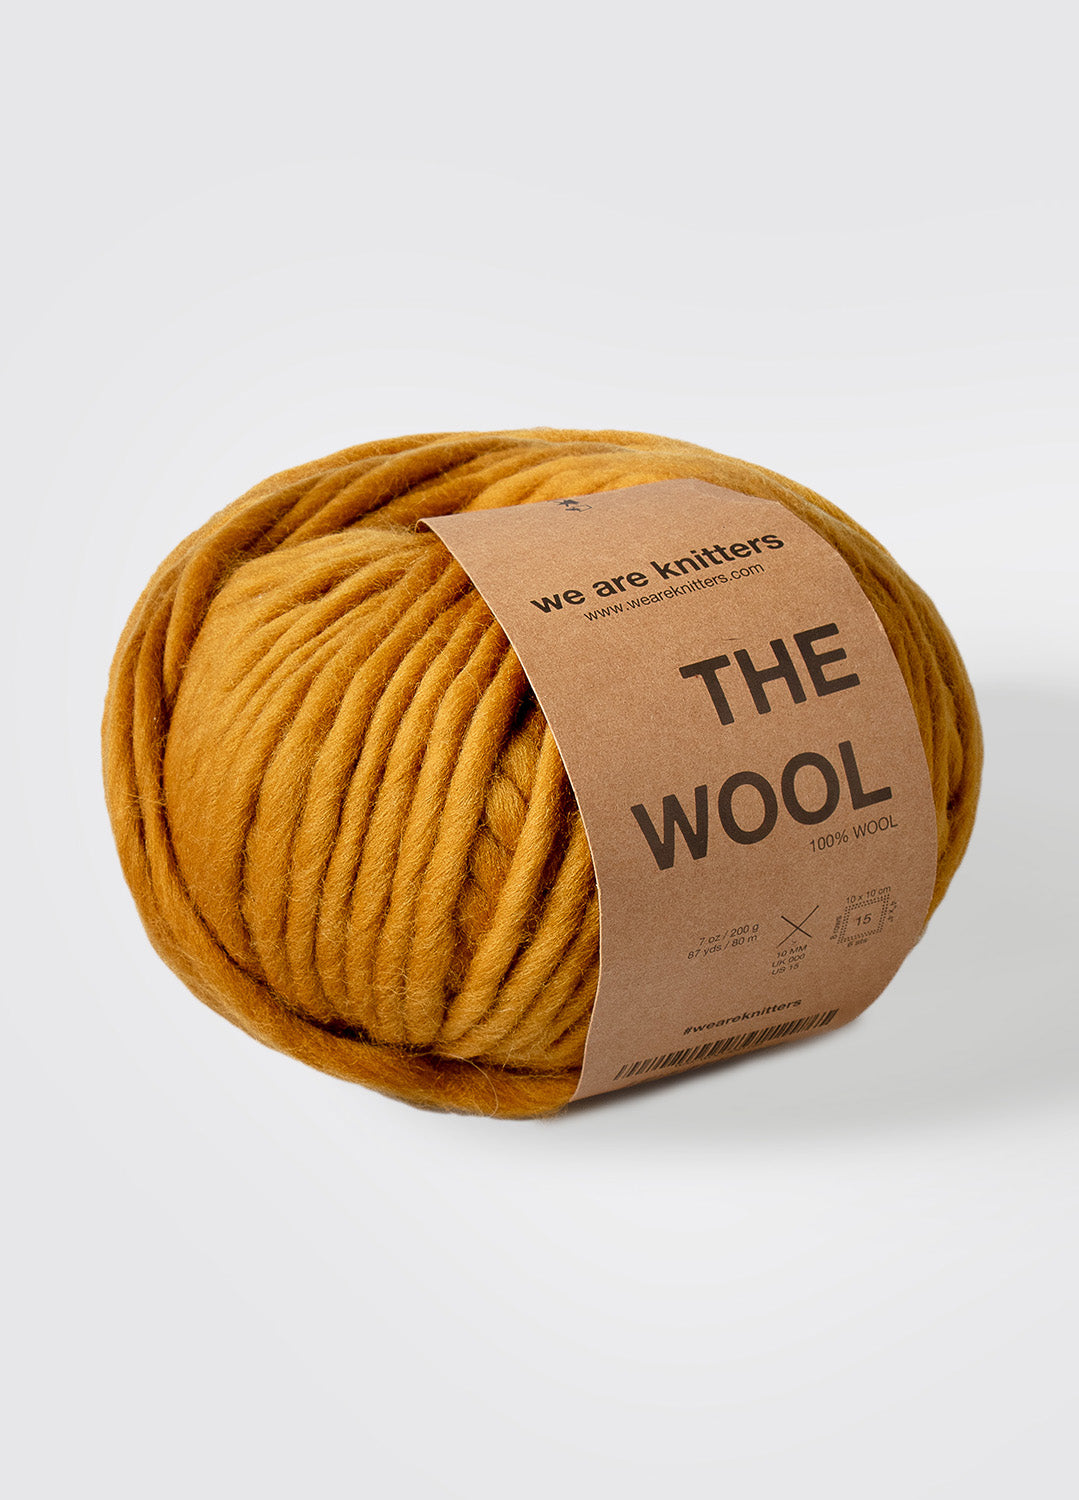 The Wool Ochre